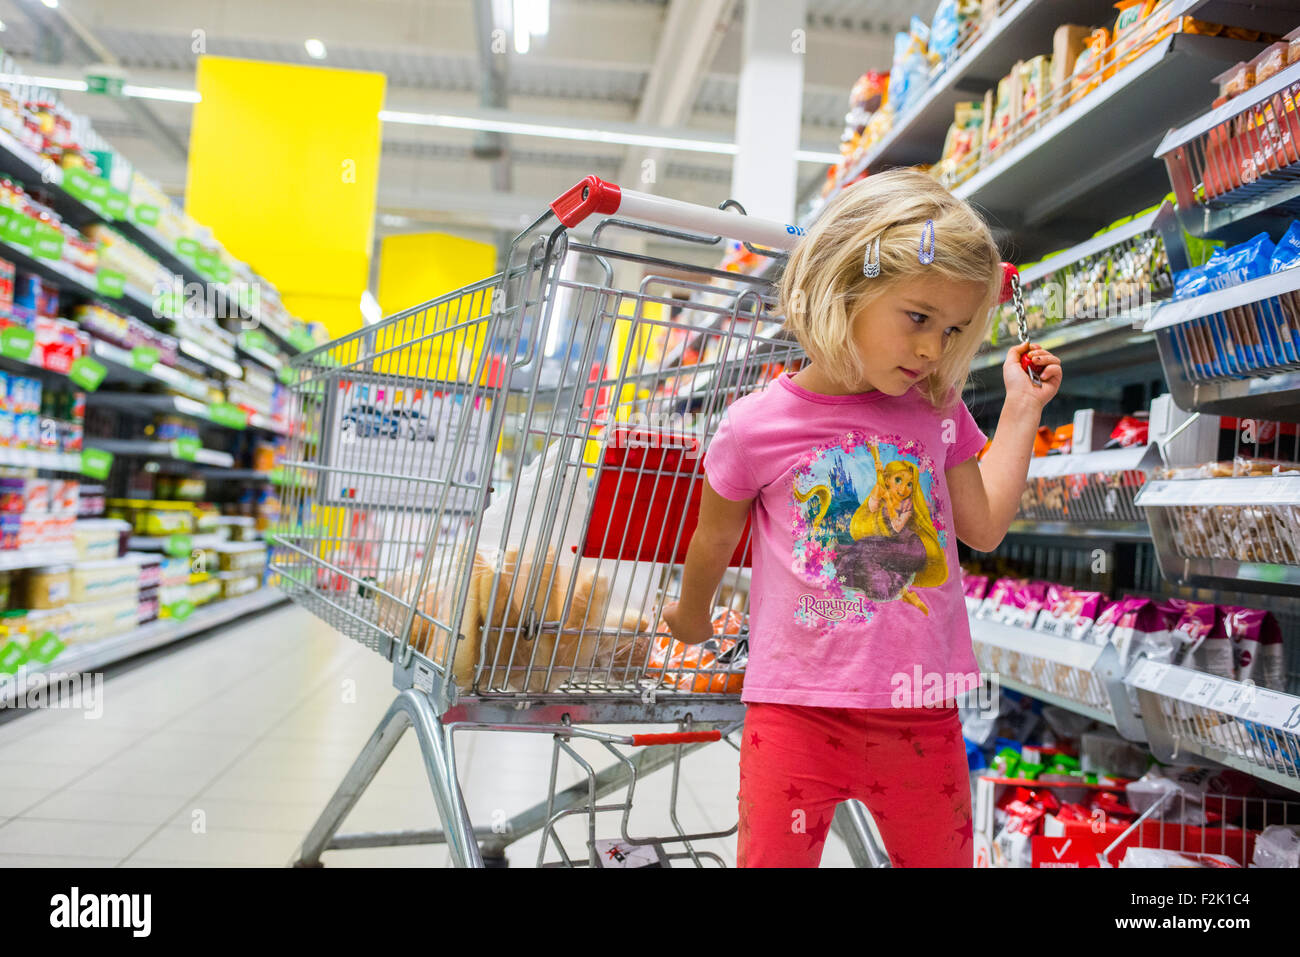 Kleines Kind blondes Mädchen Einkauf im Supermarkt, Wagen schieben, auf der Suche nach Süßigkeiten Stockfoto